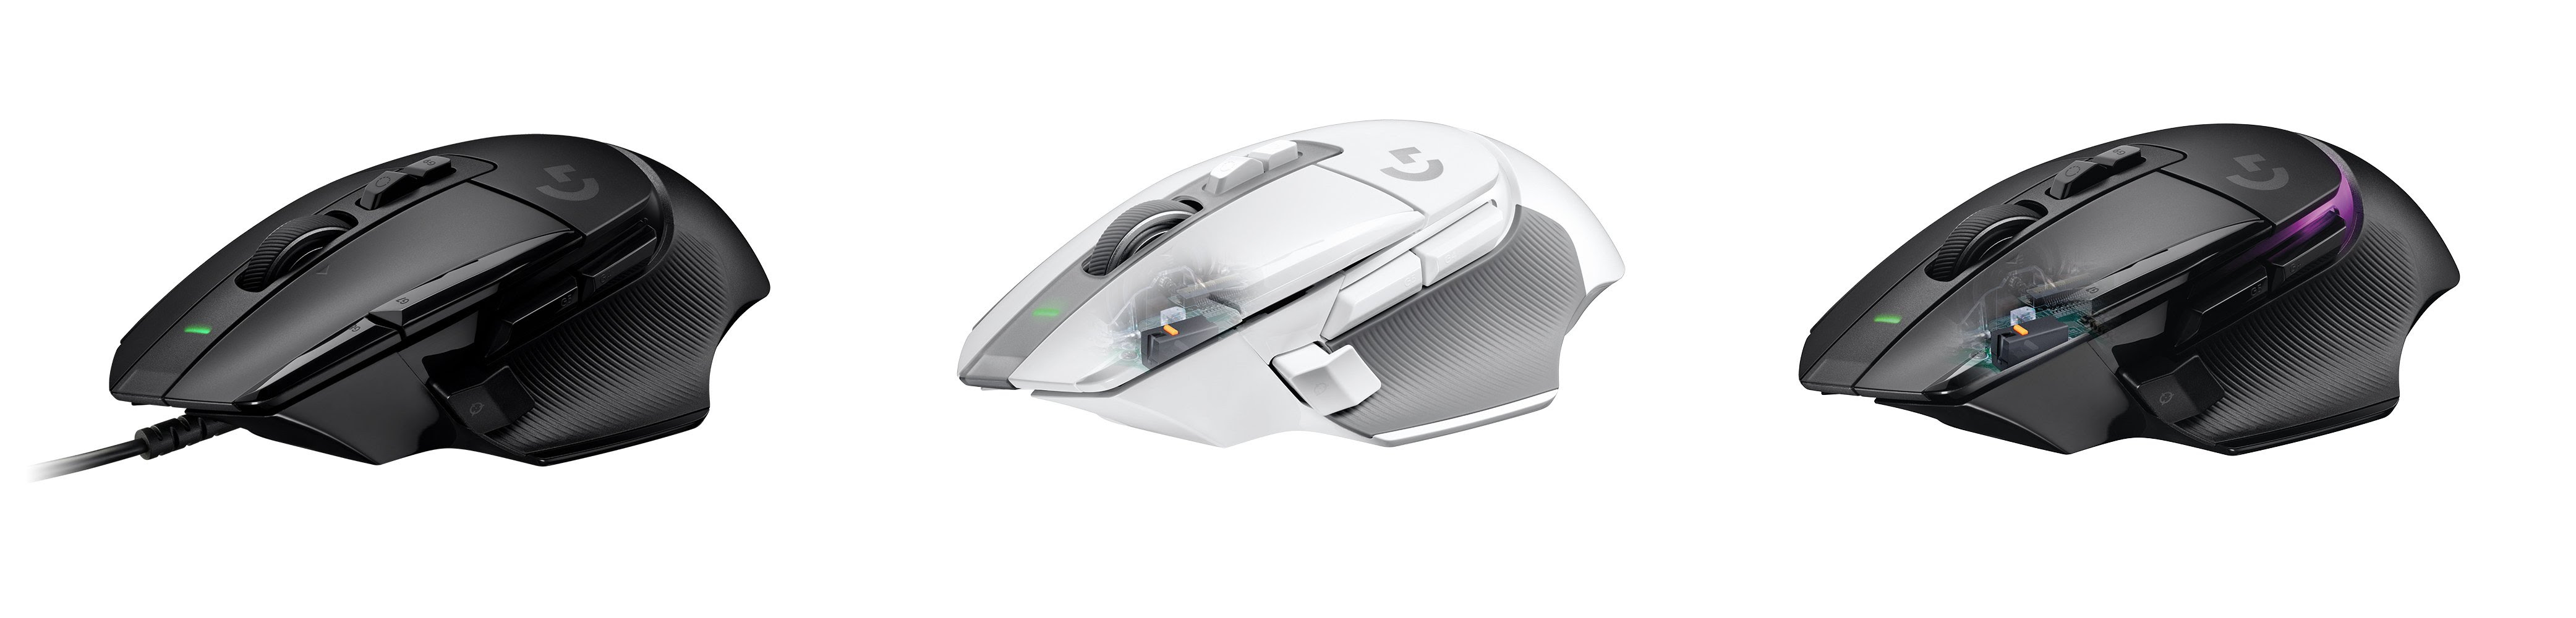 Logitech G presenta 3 varianti del G502, nuovo mouse da gaming 